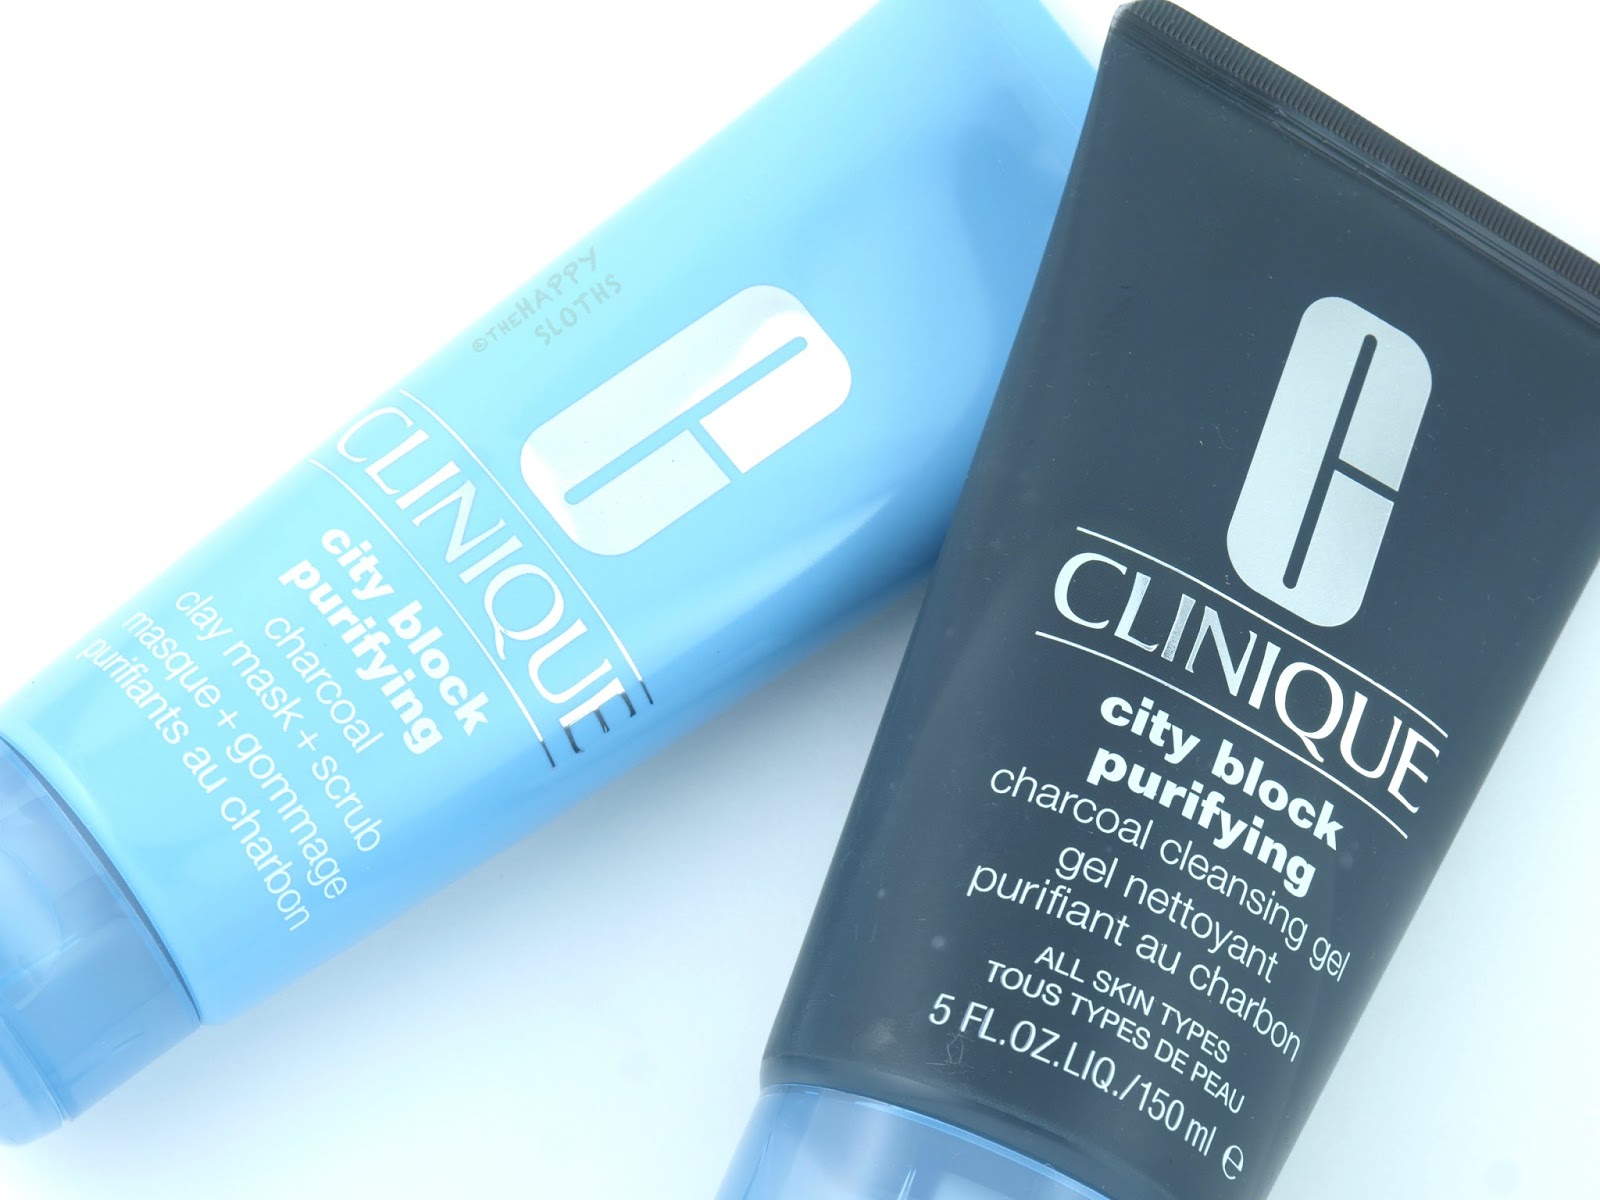 Clinique all about clean 2 in 1 Charcoal Mask Scrub. Clinique гель для глубокого очищения кожи City Block. Clay gel